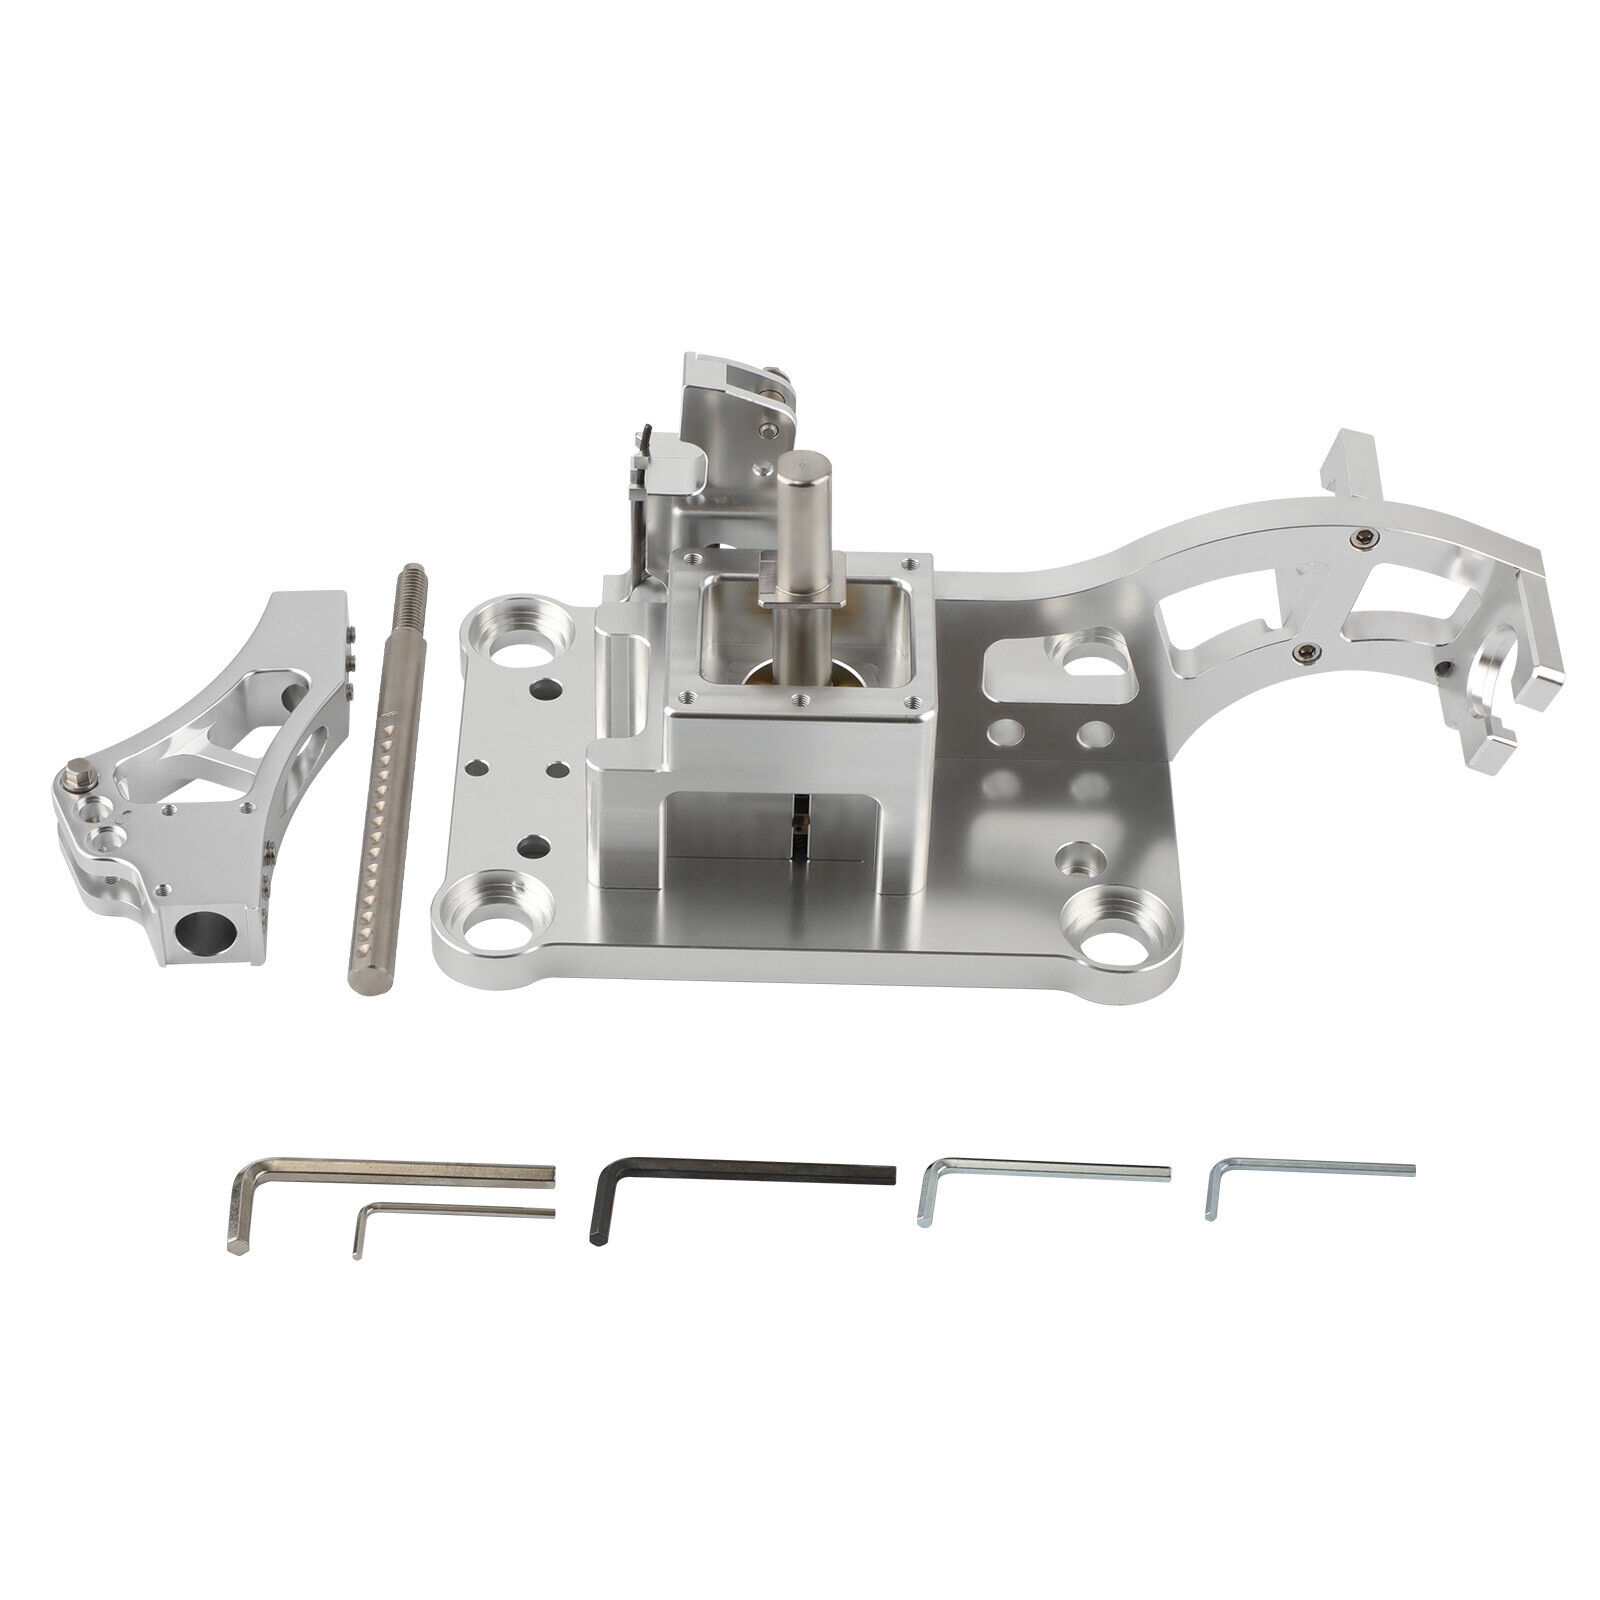 New Aluminium Shifter Box For Honda K series engine swap EG EK DC2 EF k20 k24